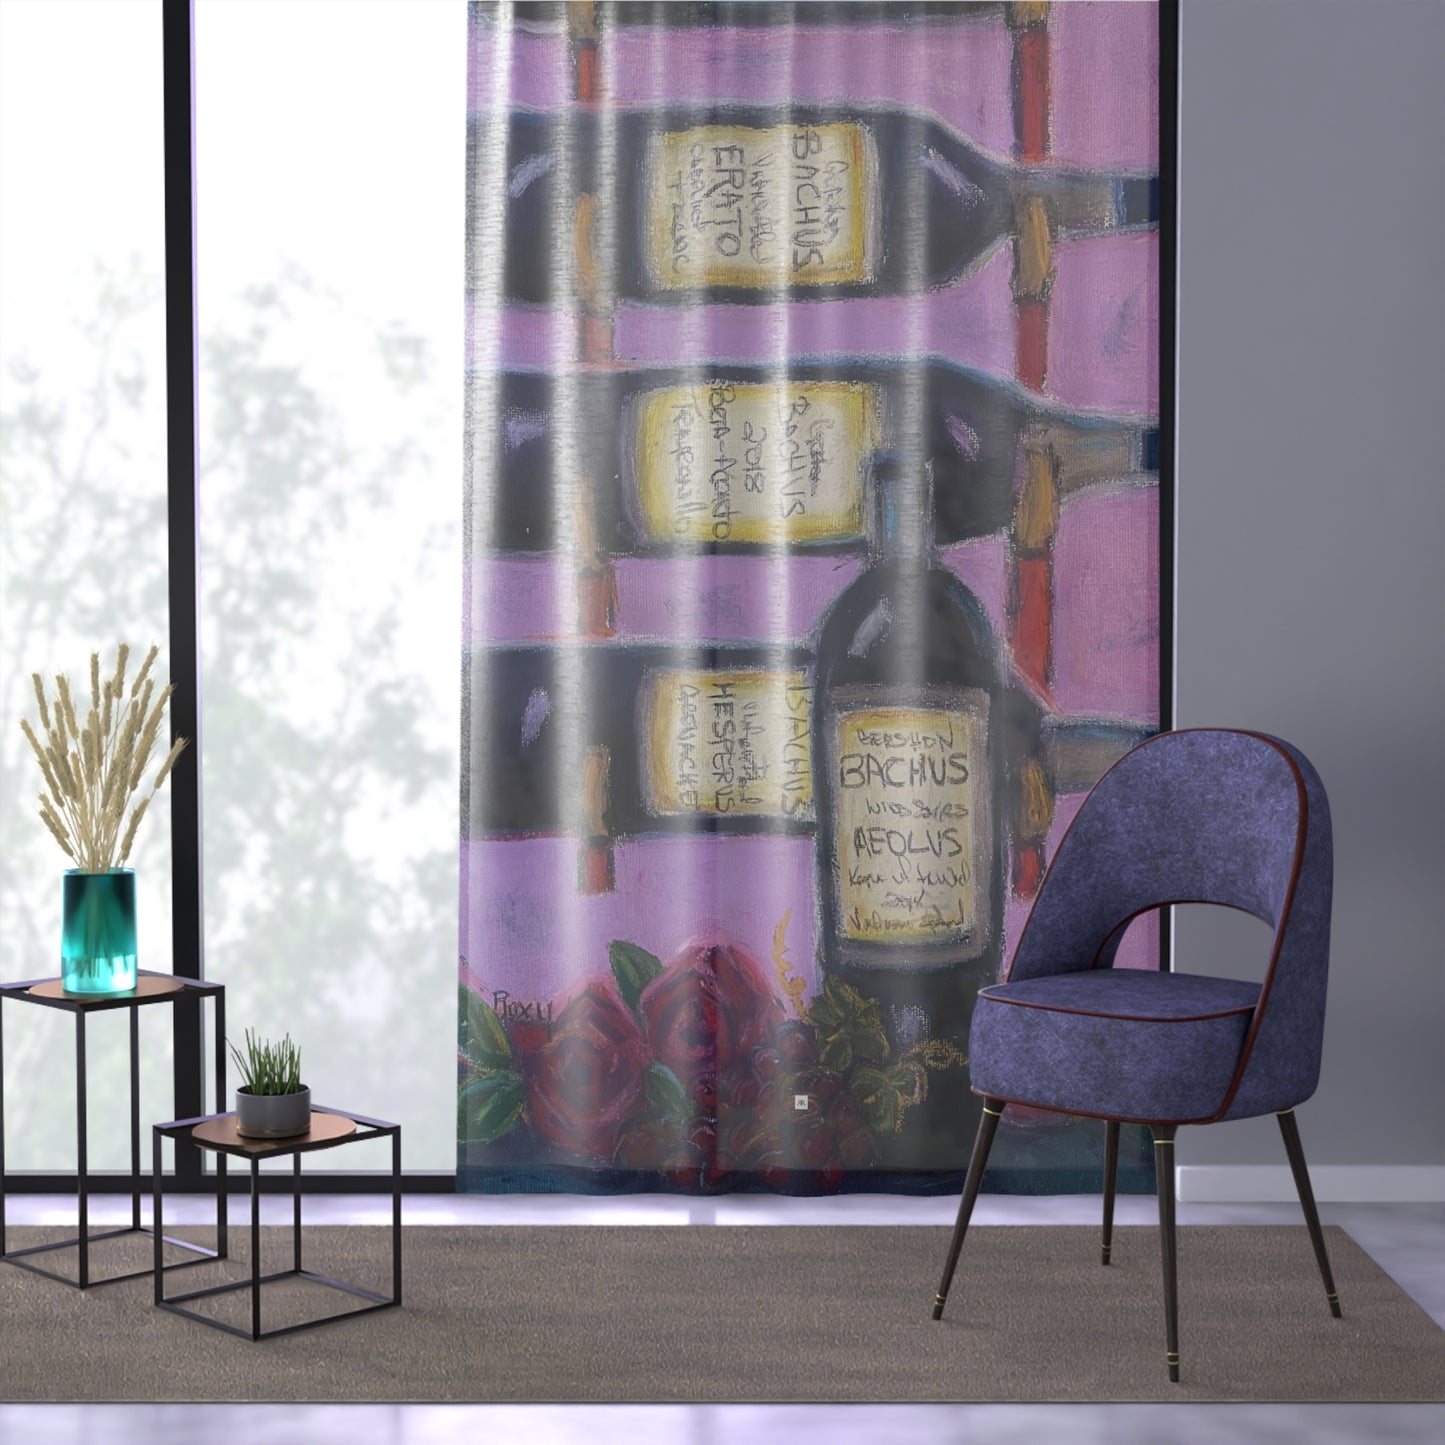 Bachus Reserves GBV Casier à vin et roses sur rideau de fenêtre transparent 213,4 x 127 cm